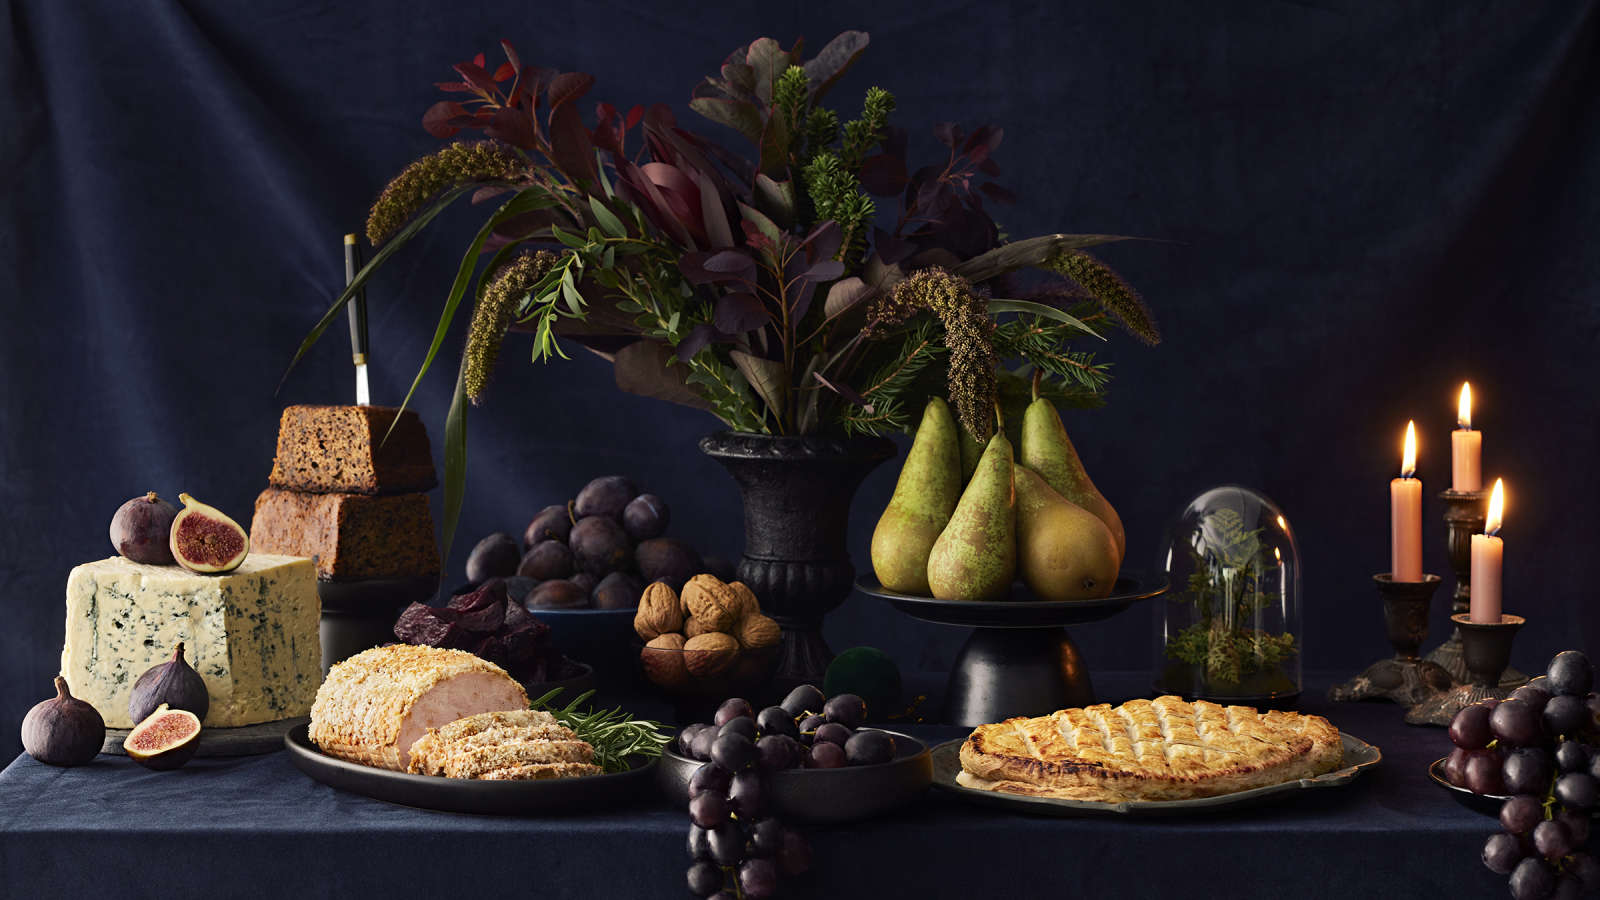 Jouluinen kattaus, jossa kalkkunarulla, vegaaninen Wellington, saaristolaisleipä, hedelmiä, pähkinöitä, juustoja, kynttilöitä ja kukka-asetelma